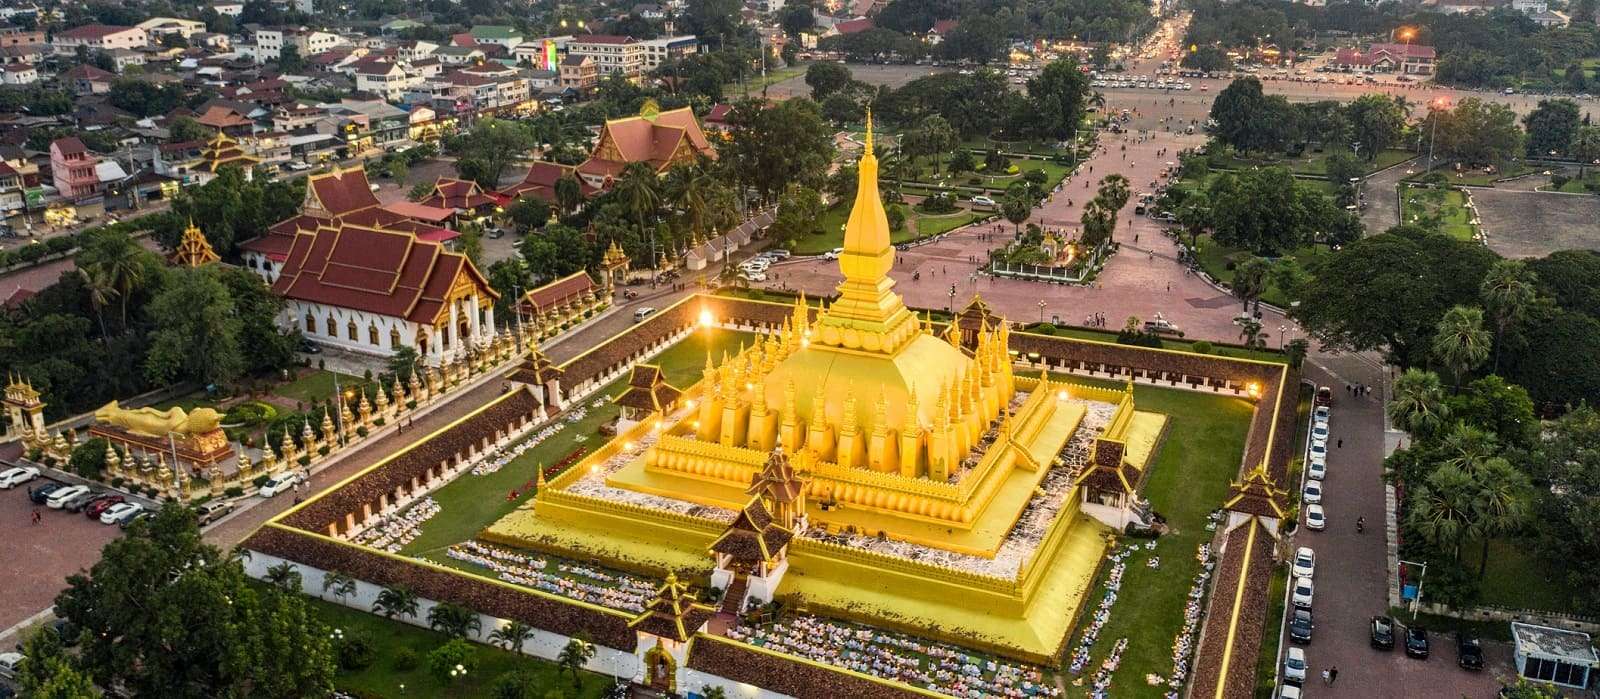 Kinh nghiệm du lịch Lào: Lịch trình, Chi phí, Ăn nghỉ, Mua sắm